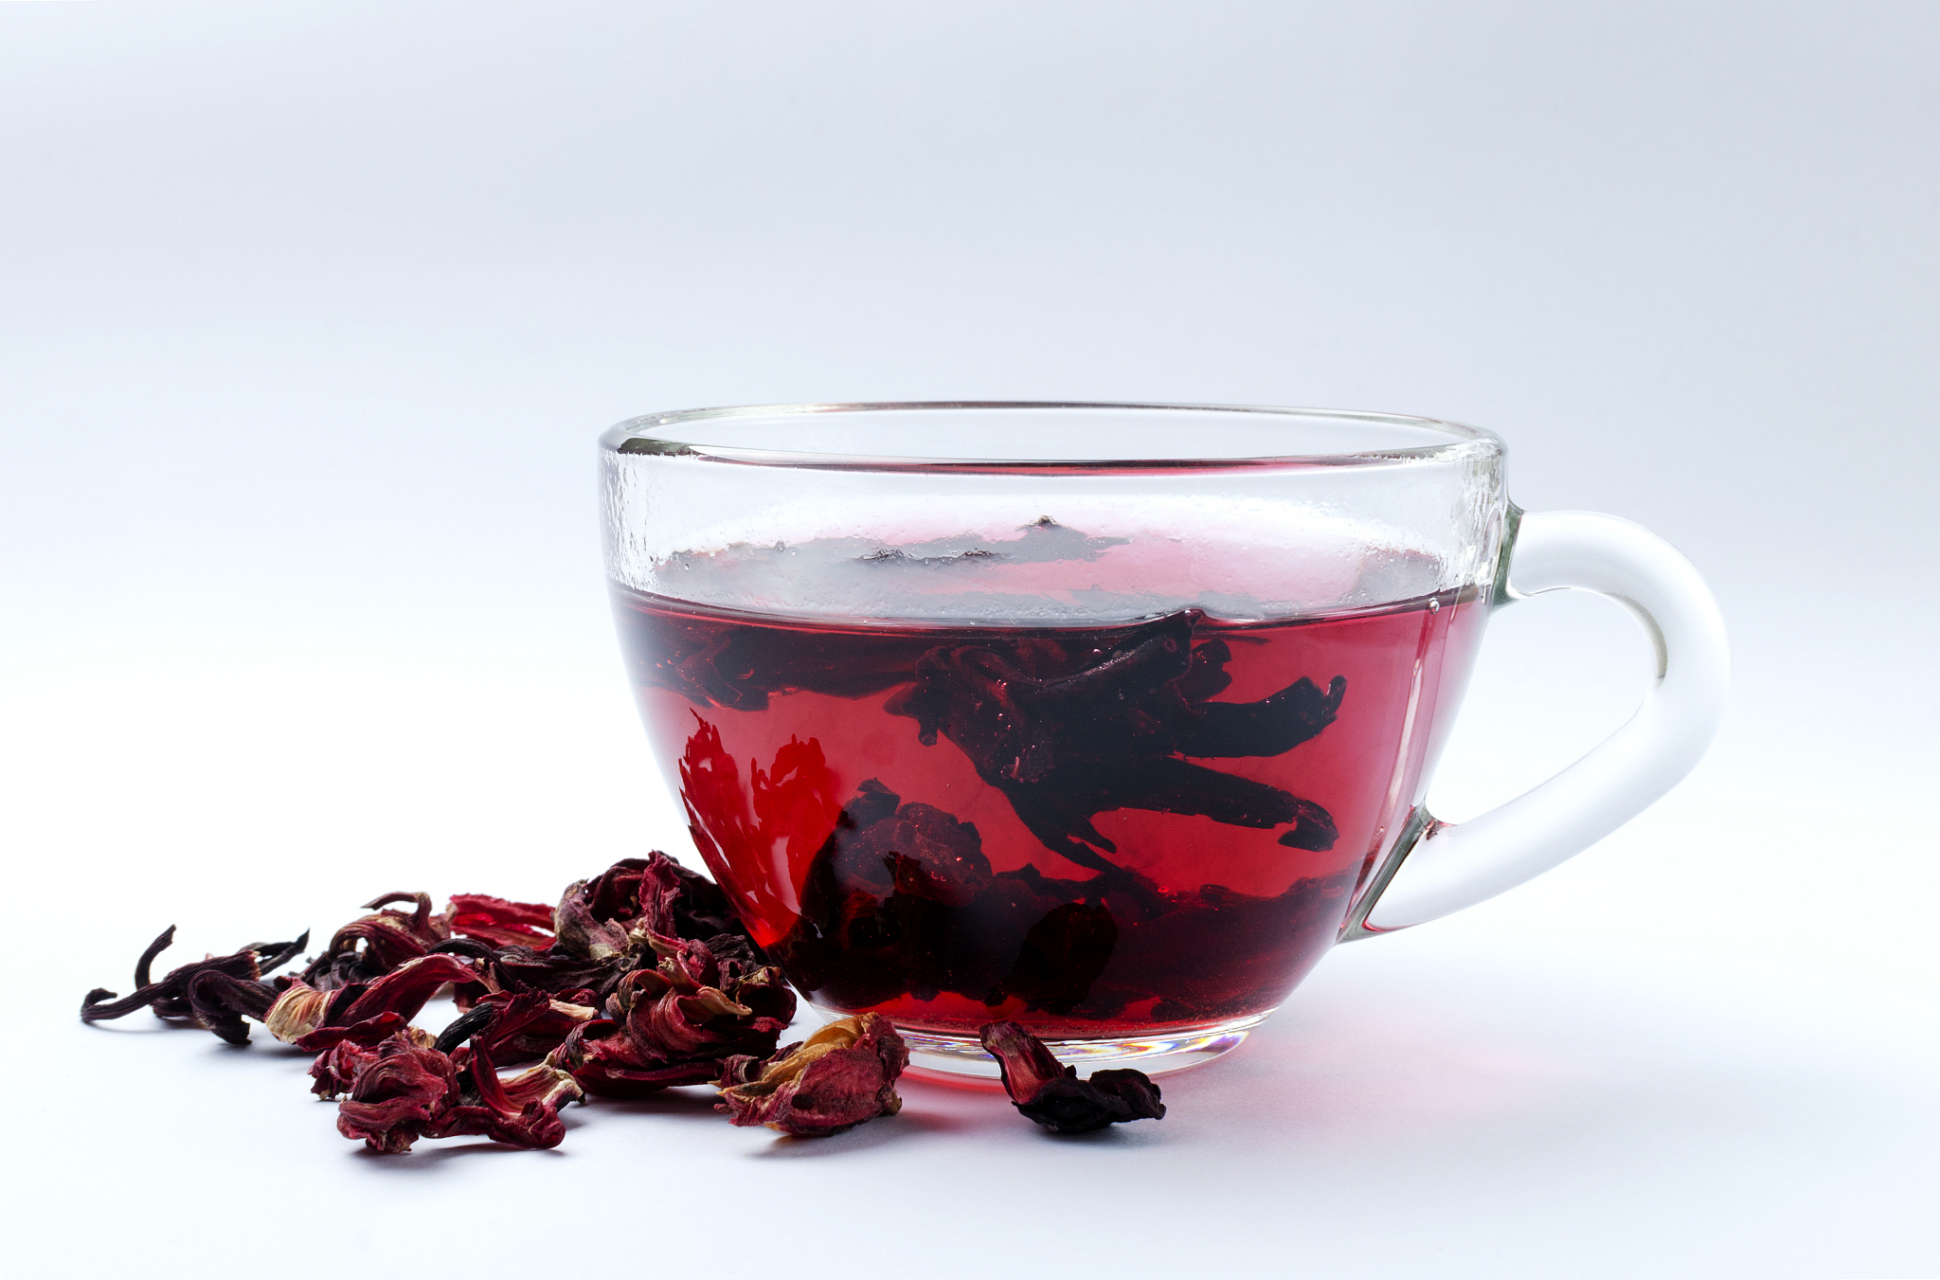 洛神花茶,是一种低热量,低糖分的茶饮,适合健康饮食的人士